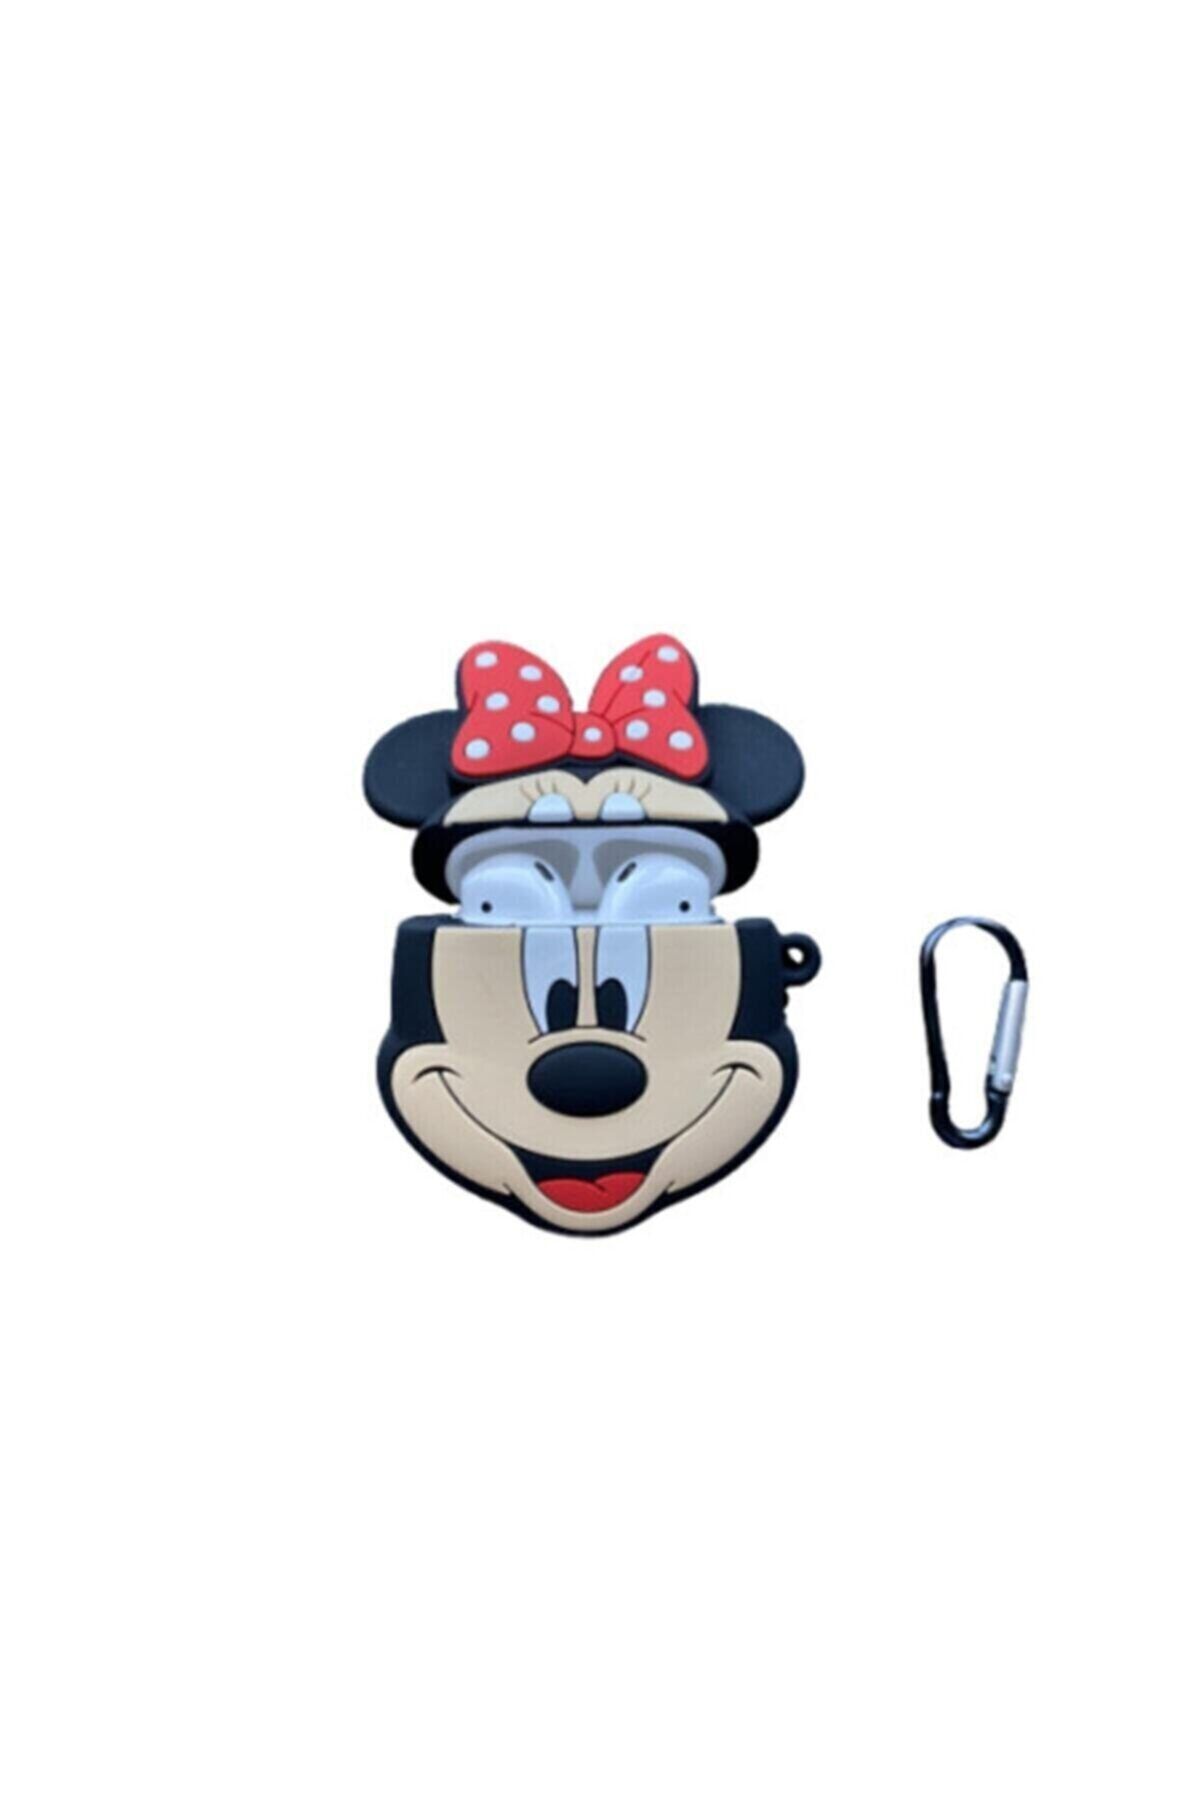 BUL AKSESUAR Airpods Pro Uyumlu Silikon Mickey Mouse Sekilli Kılıf